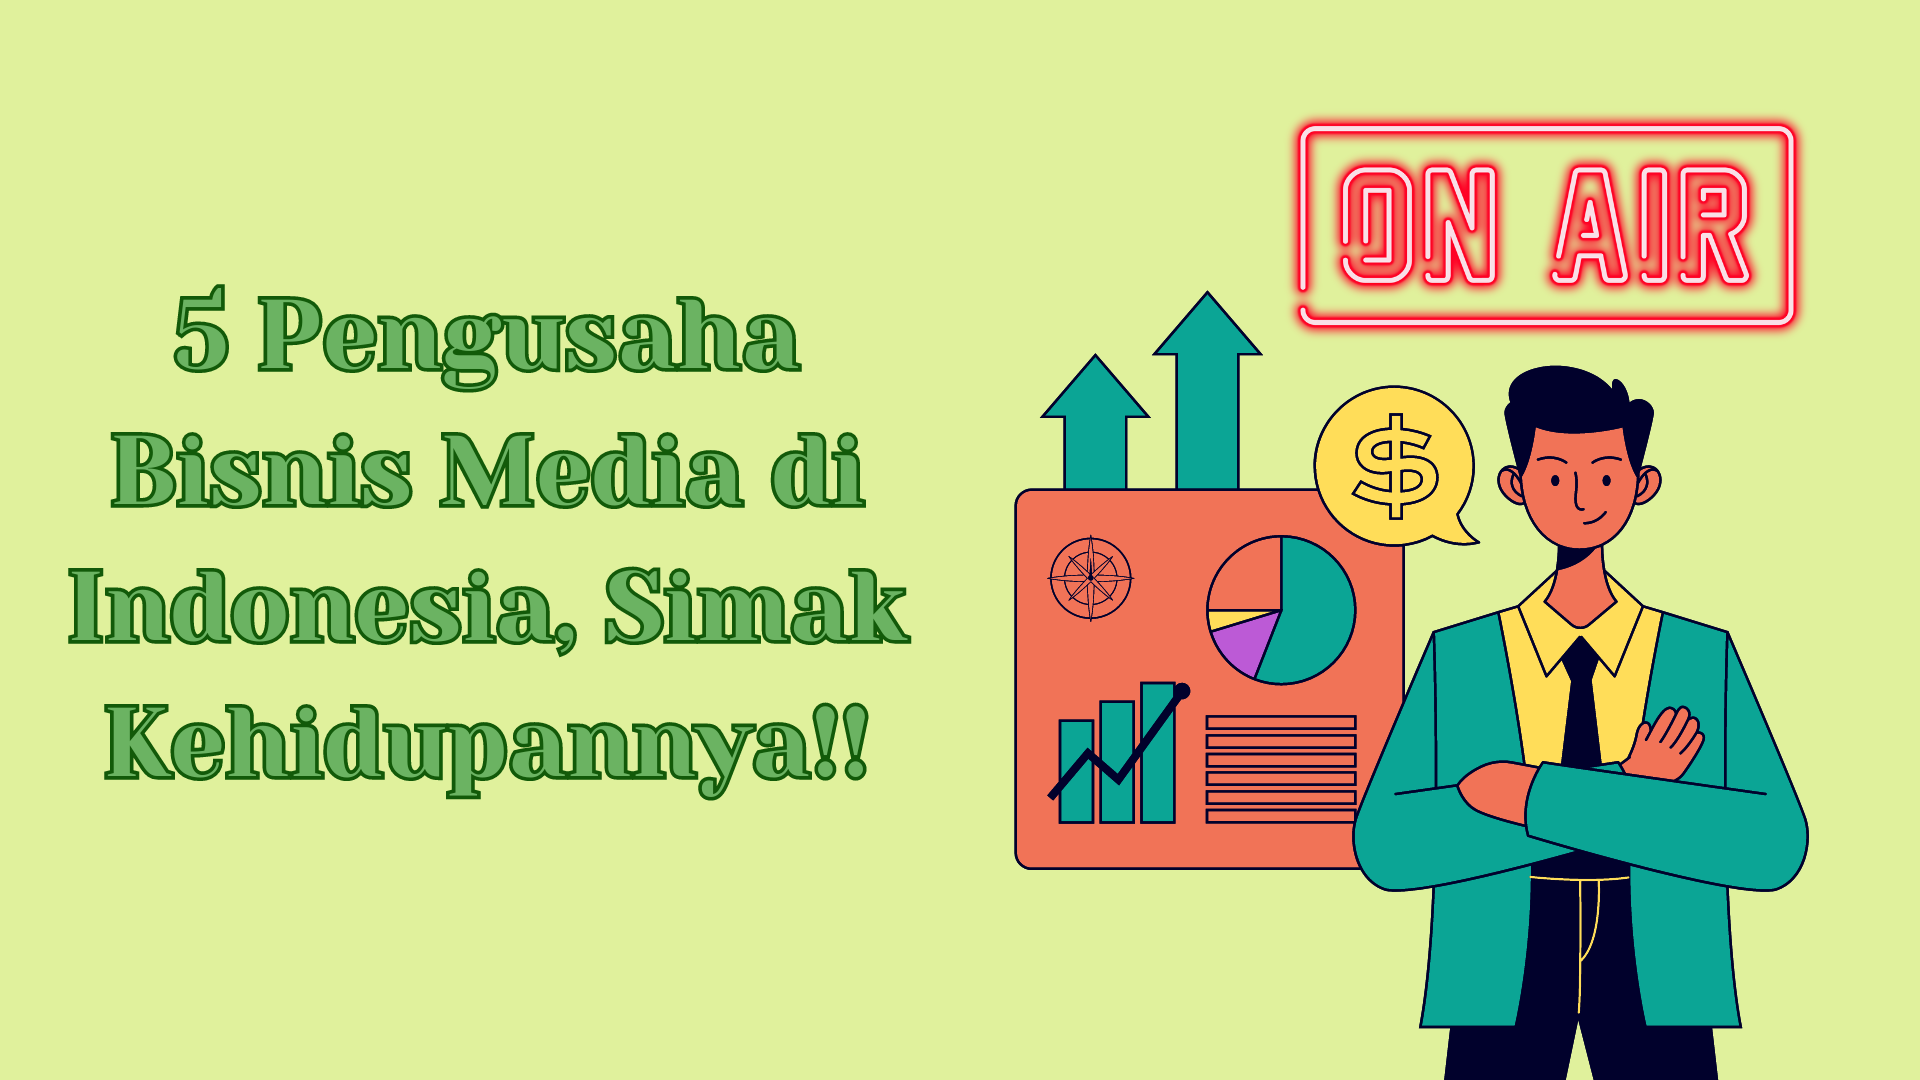 5 Pengusaha Bisnis Media di Indonesia, Simak Kehidupannya!!